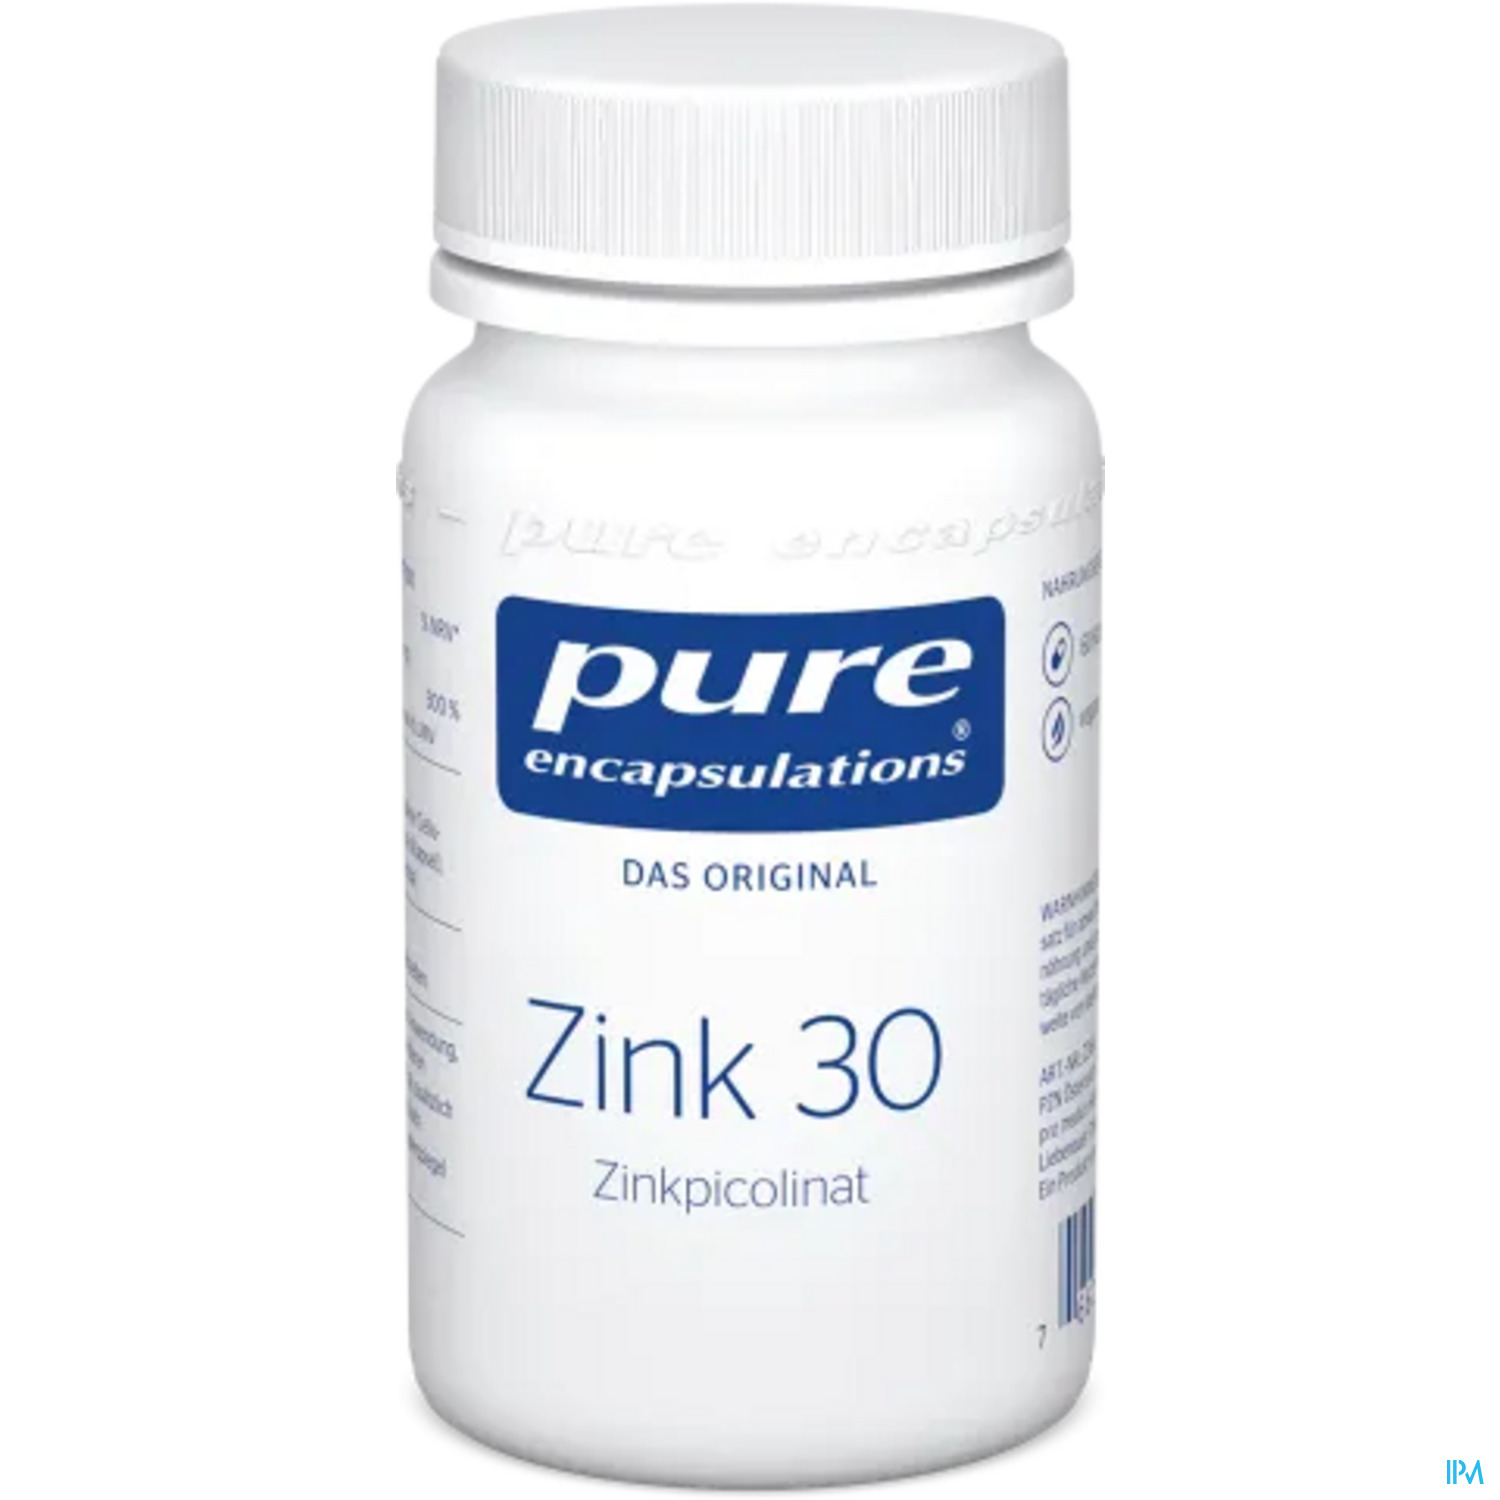 Pure Encapsulations Zink 30 (zinkpicolinat) 60 Kapseln